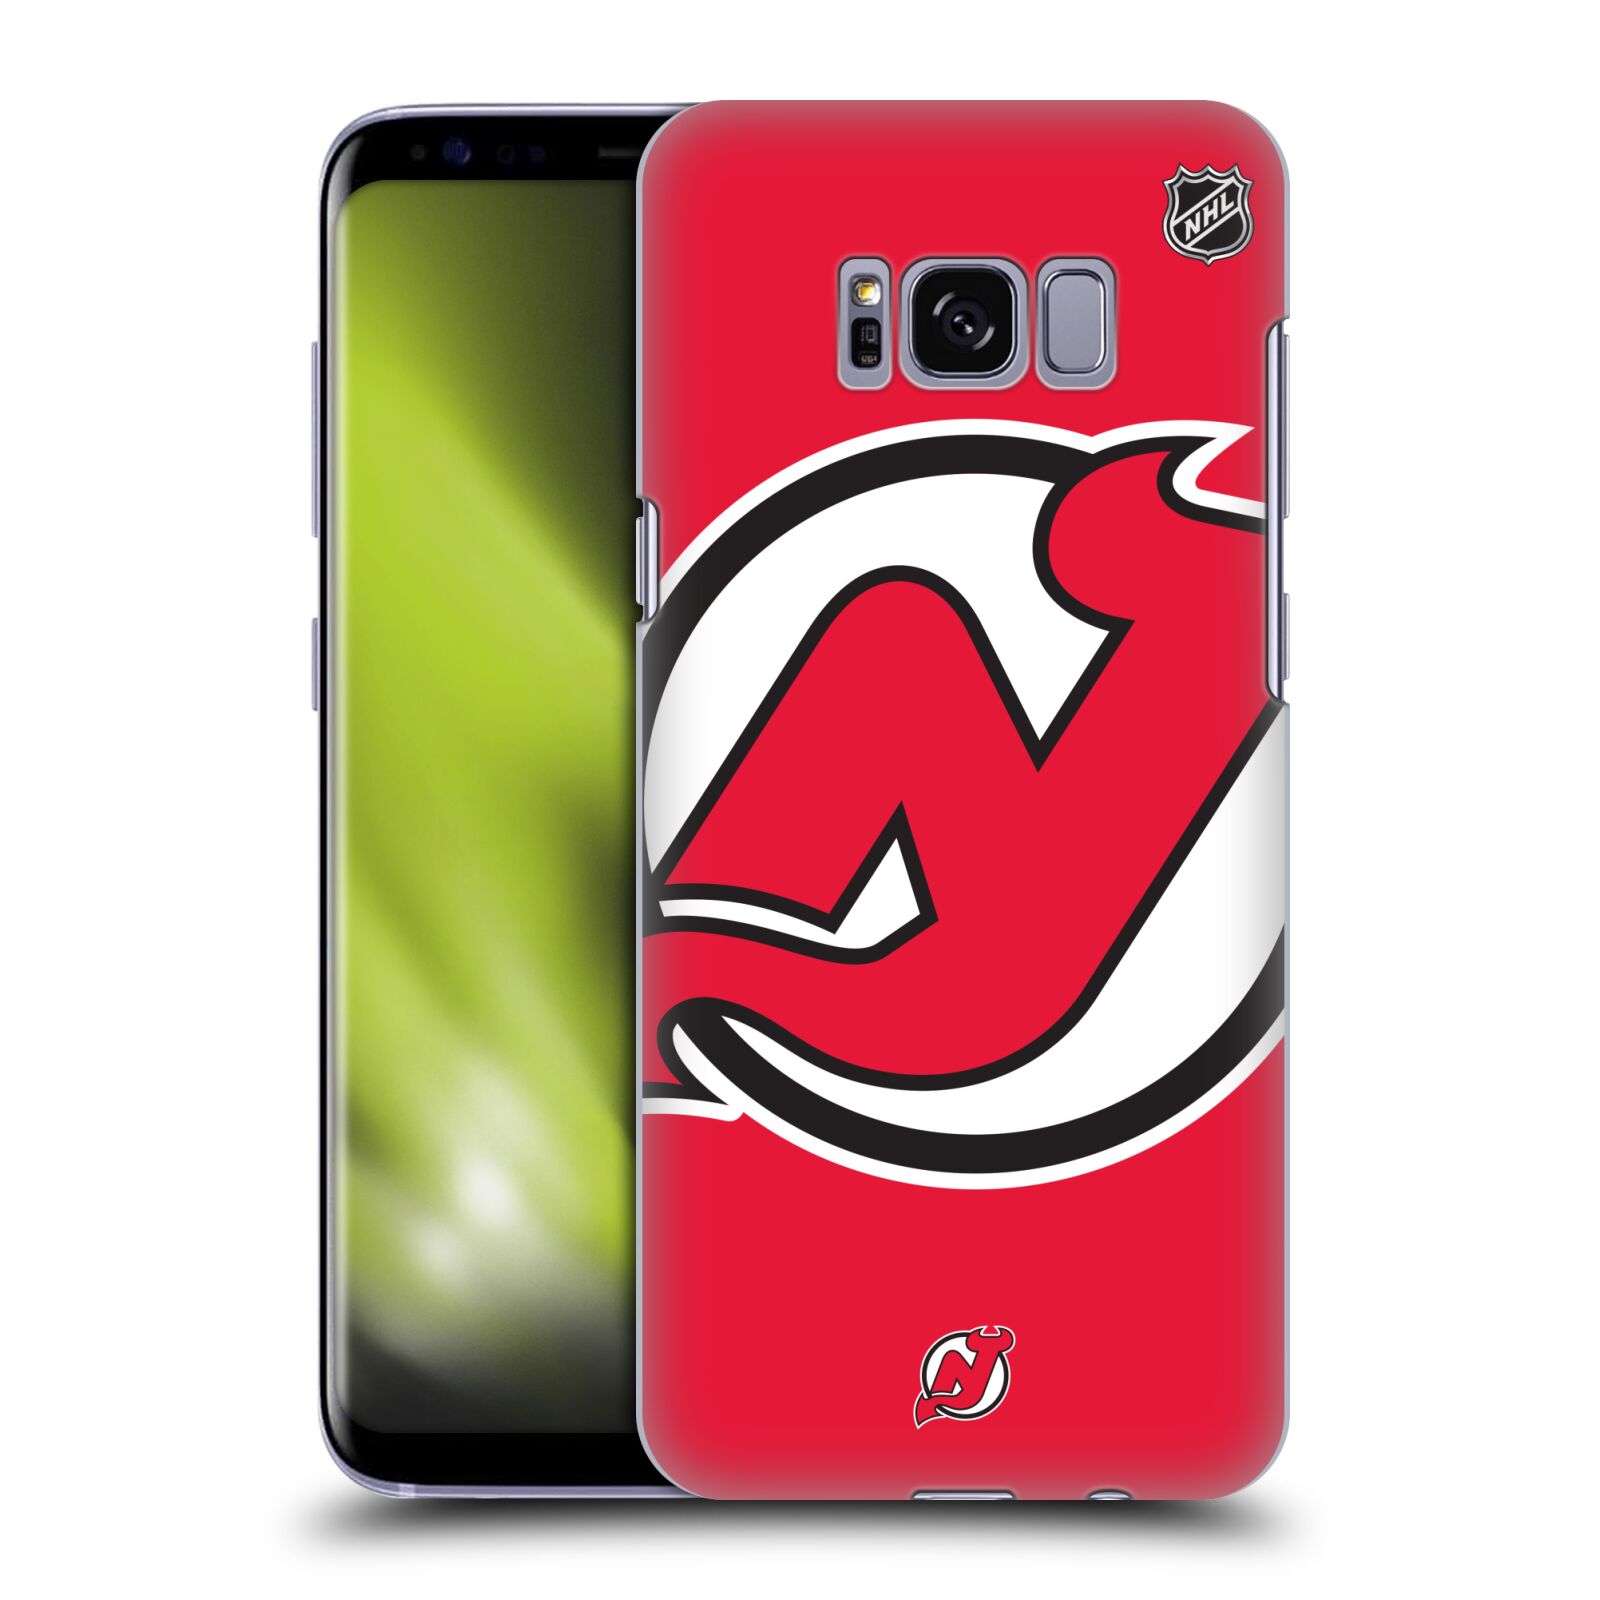 Pouzdro na mobil Samsung Galaxy S8 - HEAD CASE - Hokej NHL - New Jersey Devils - Velký znak